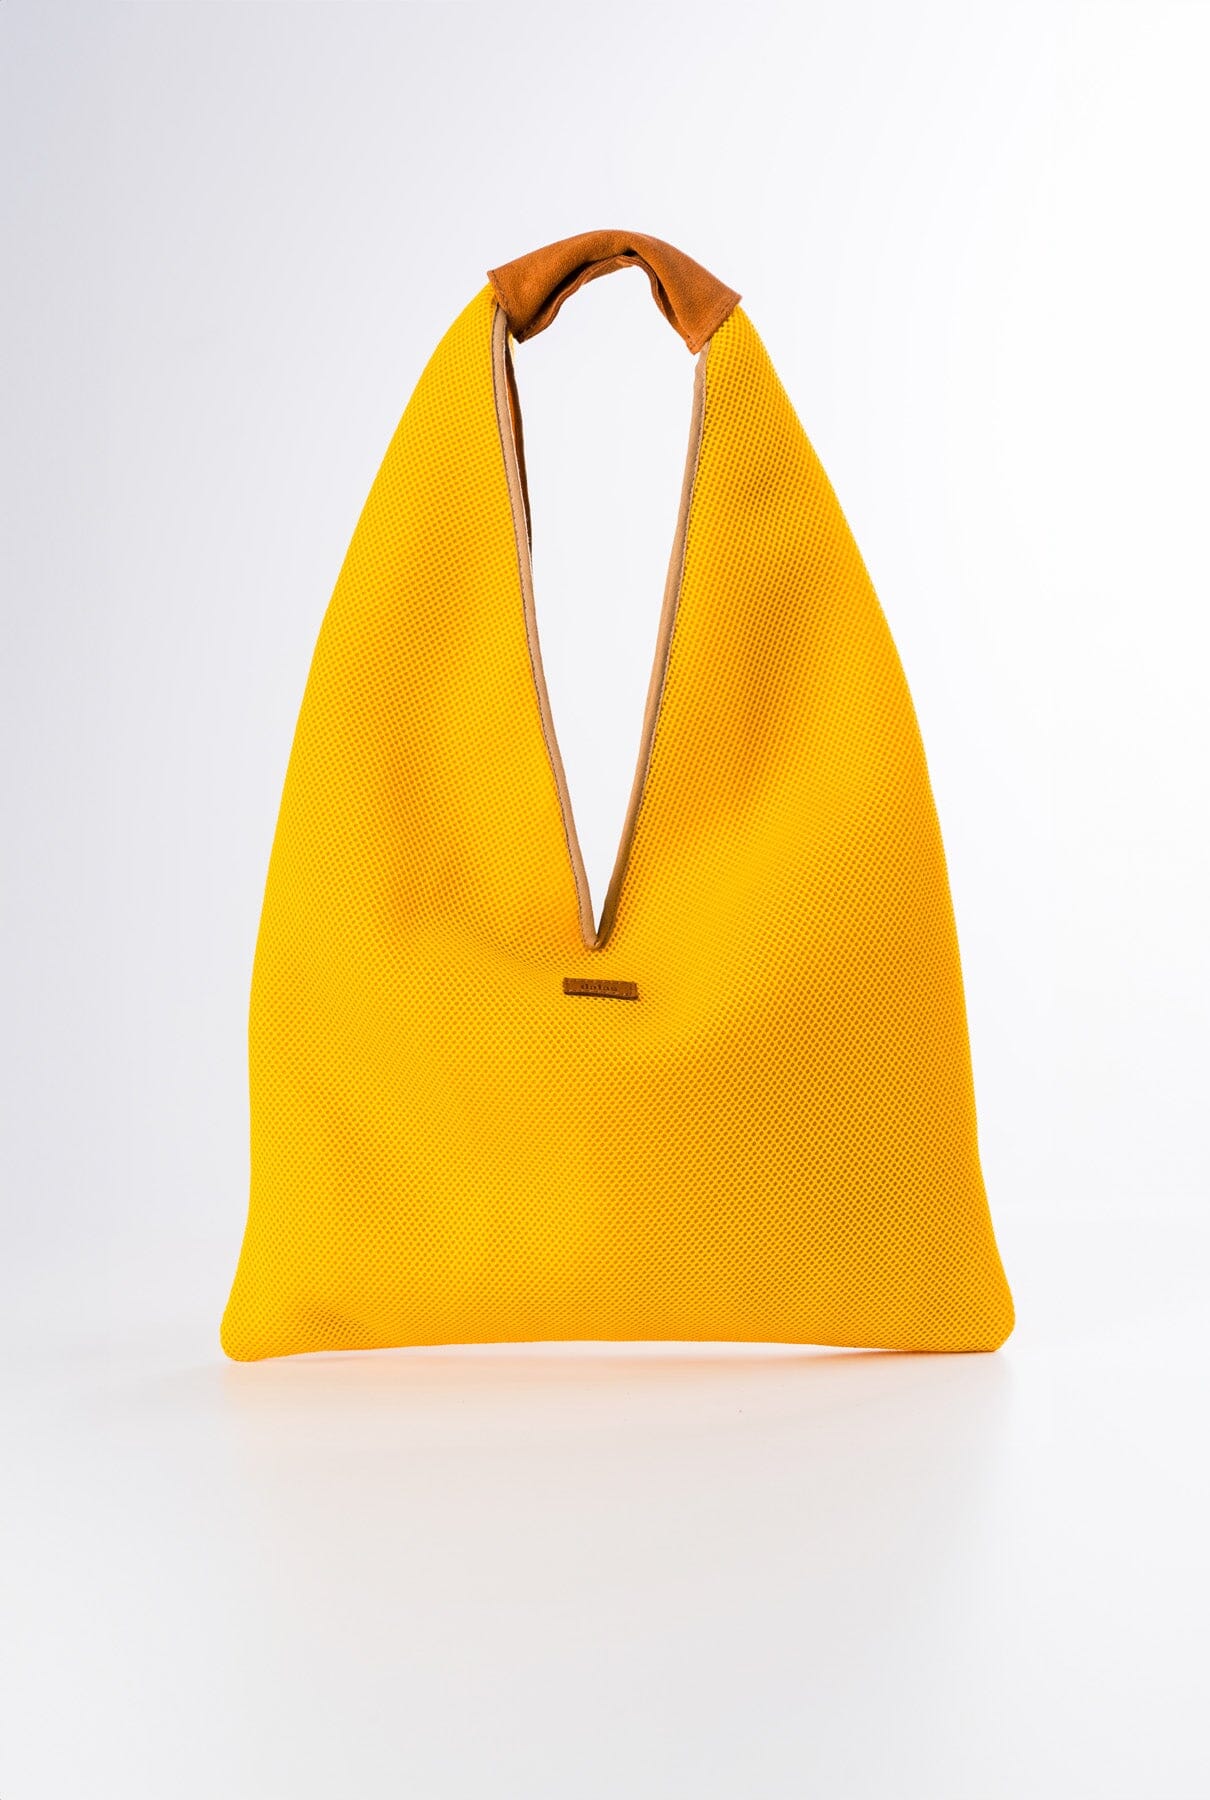 Triangular yellow bag Shoulder bags Dalas 